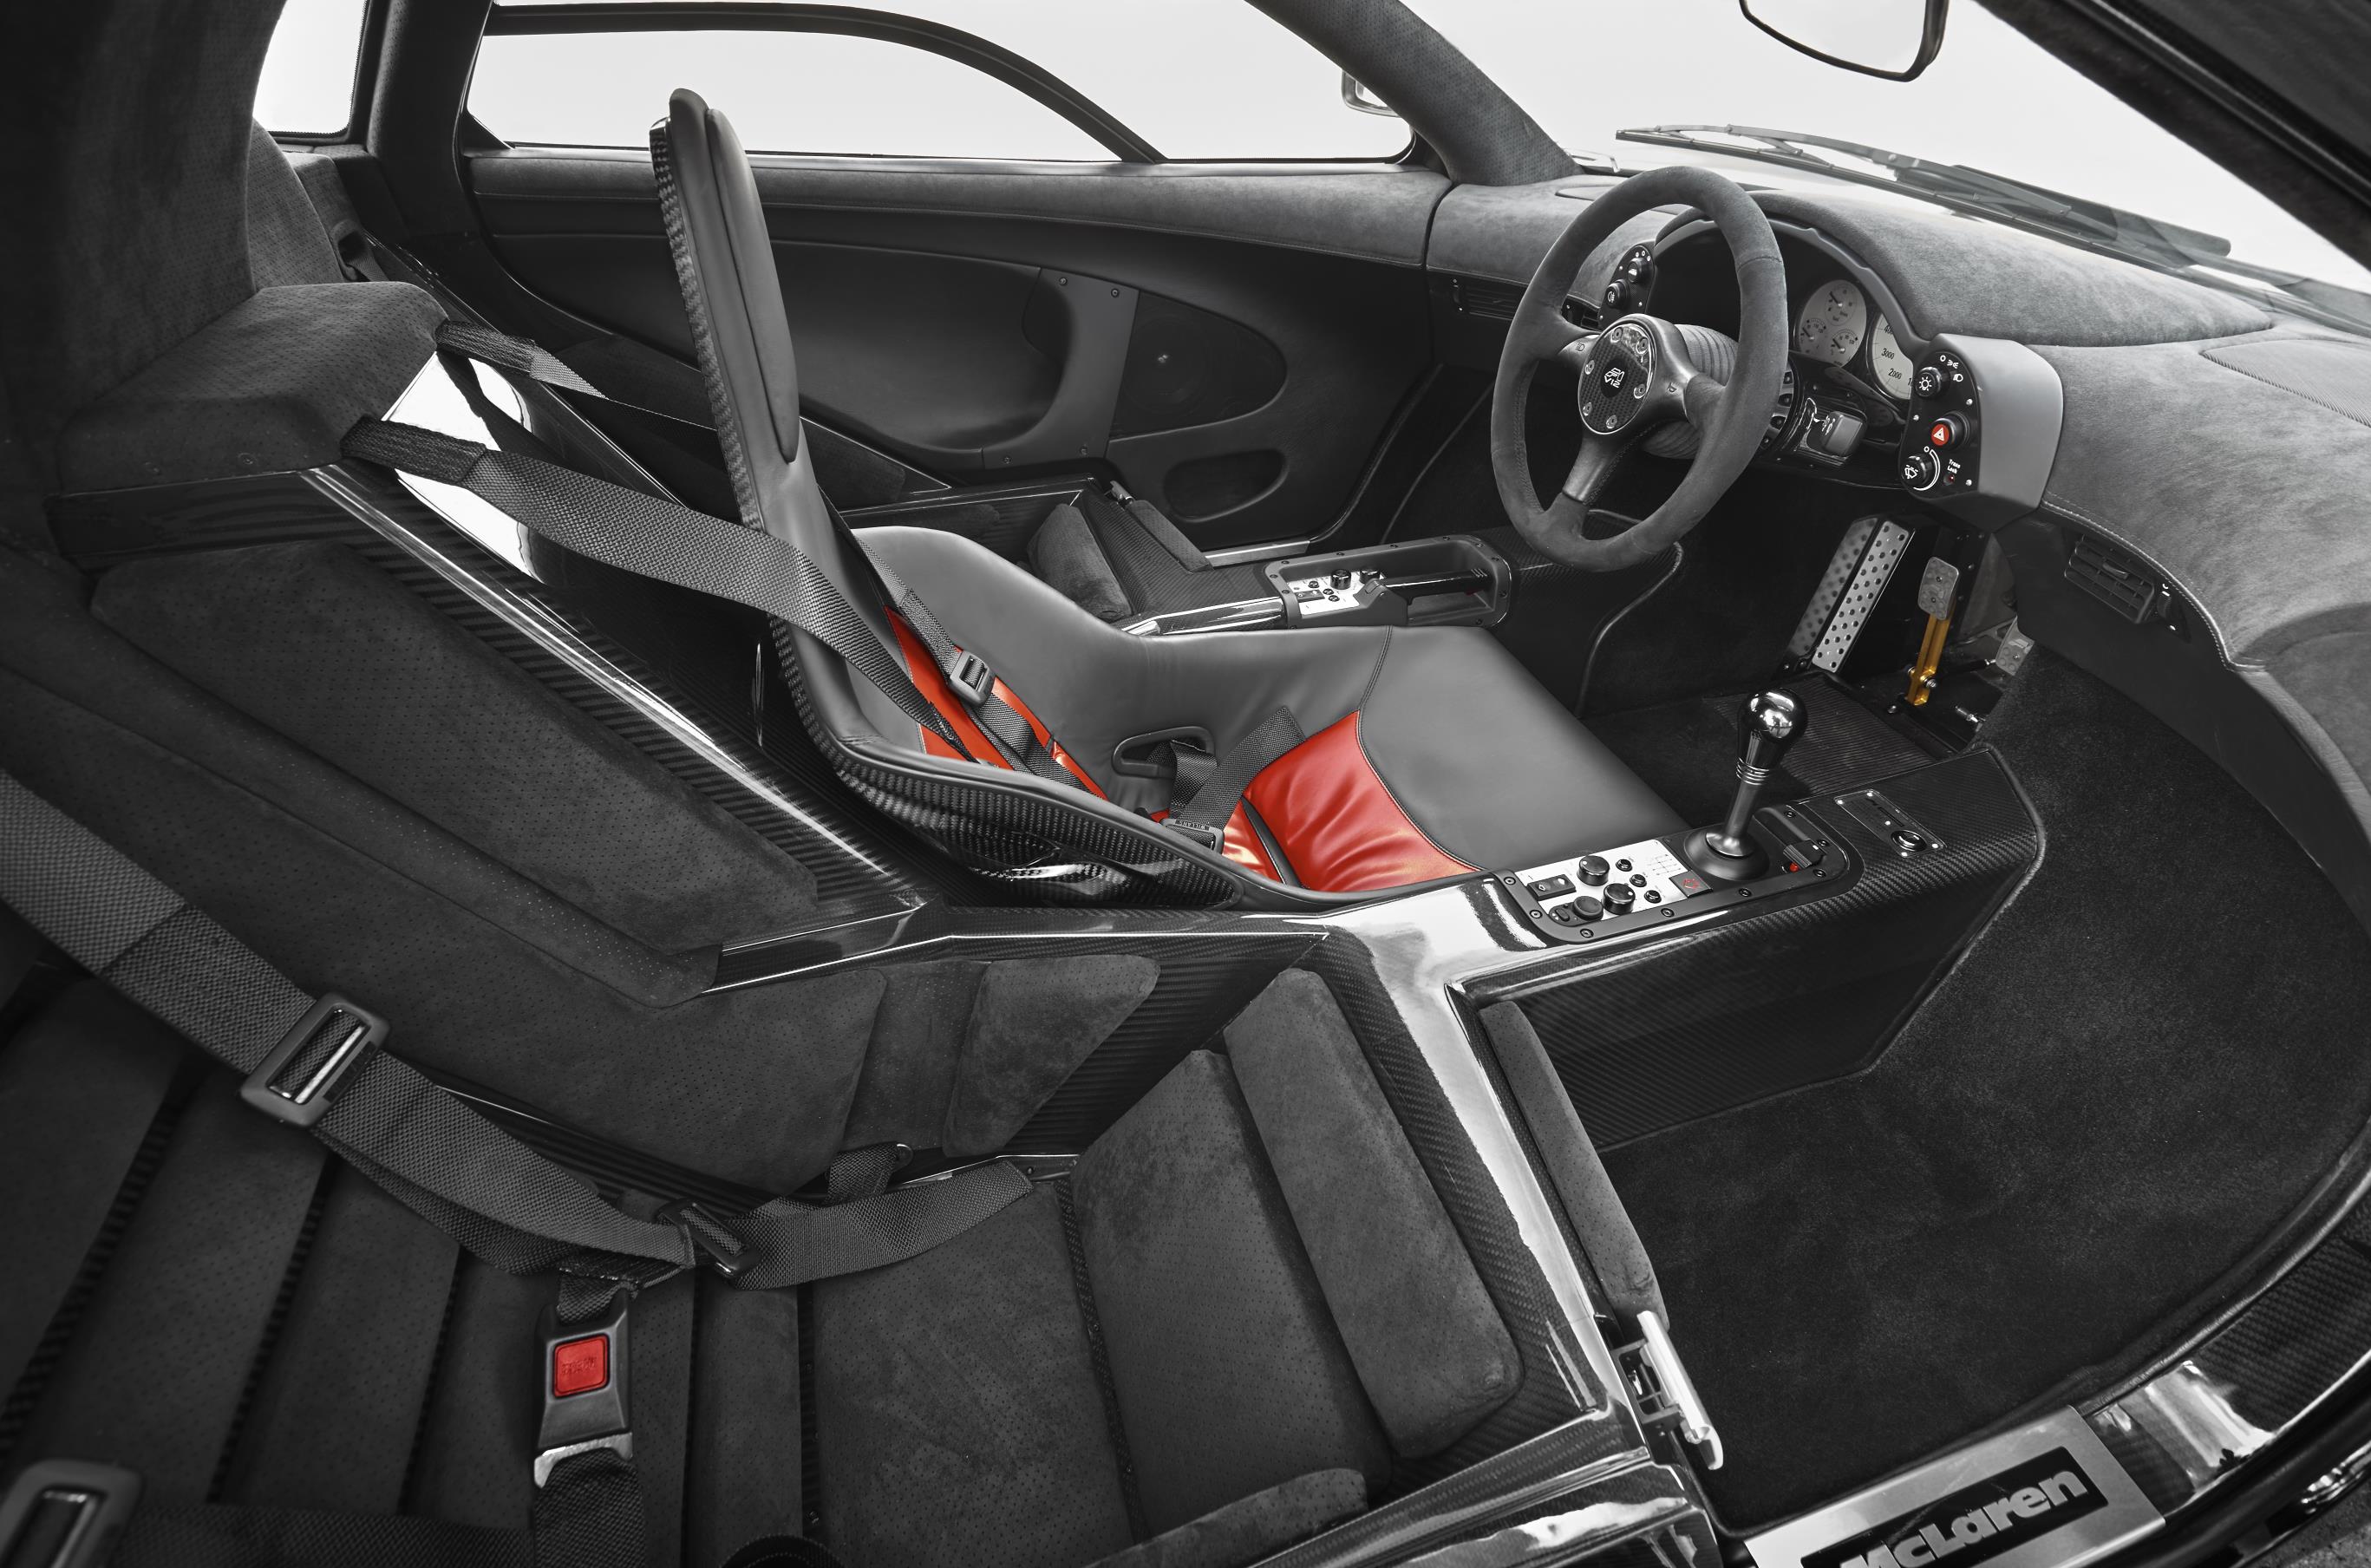 
Điểm nhấn bên trong khoang lái những chiếc McLaren F1 vẫn là ghế lái được đặt chính giữa và ghế phụ hơi lui về sau. Nội thất tông xuyệt tông với ngoại thất của xe, trong đó phần ghế lái được trang trí thêm sắc đỏ khá nổi bật.
